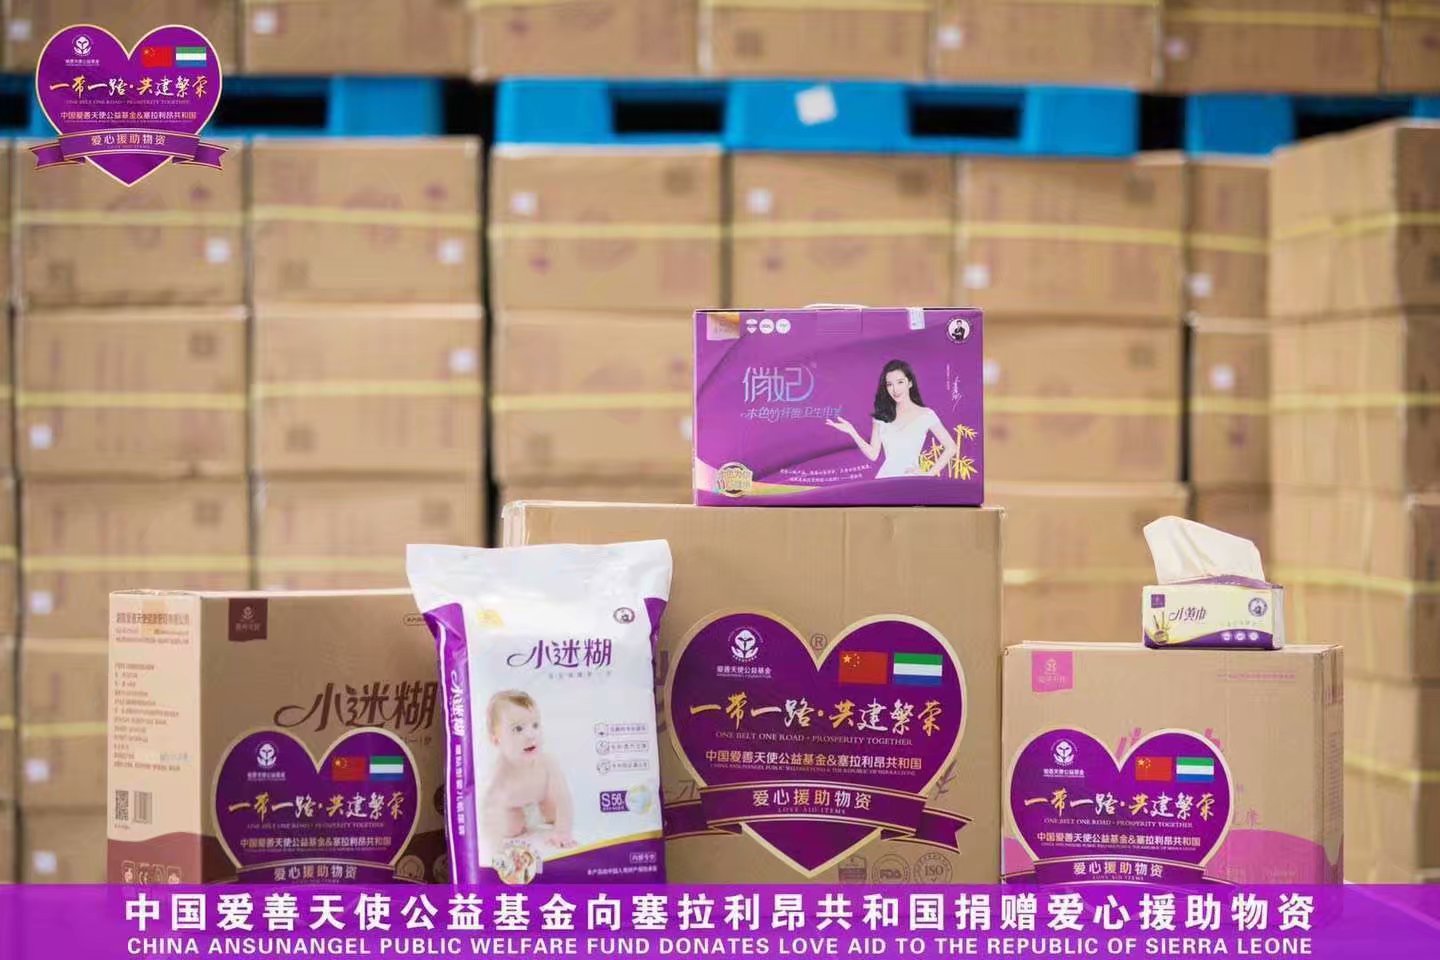 中国爱善天使公益基金向塞拉利昂共和国捐赠爱心援助物质